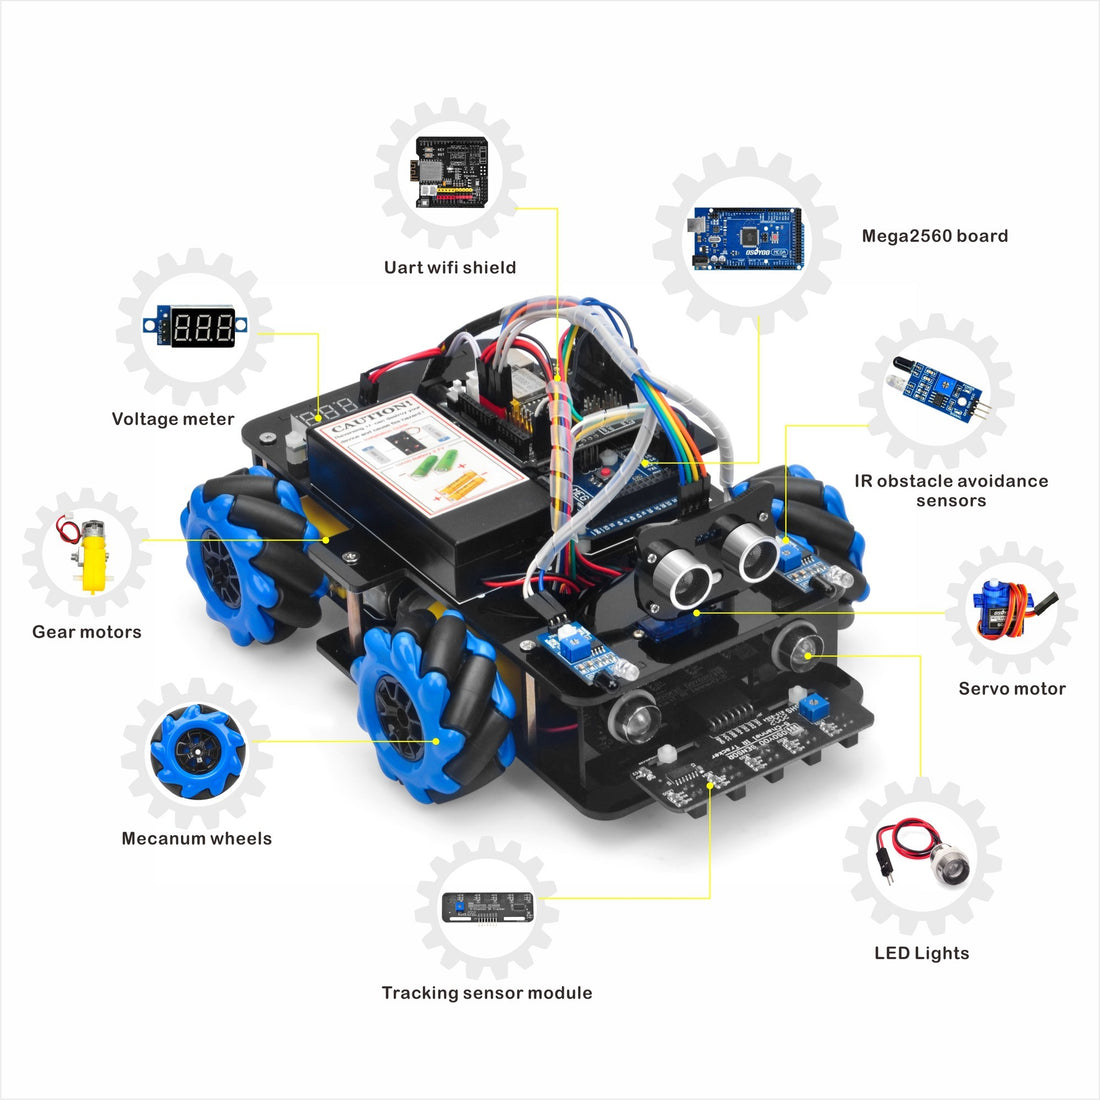 20cm LED Lights for arduino robotic car kit (Model #2021006600)